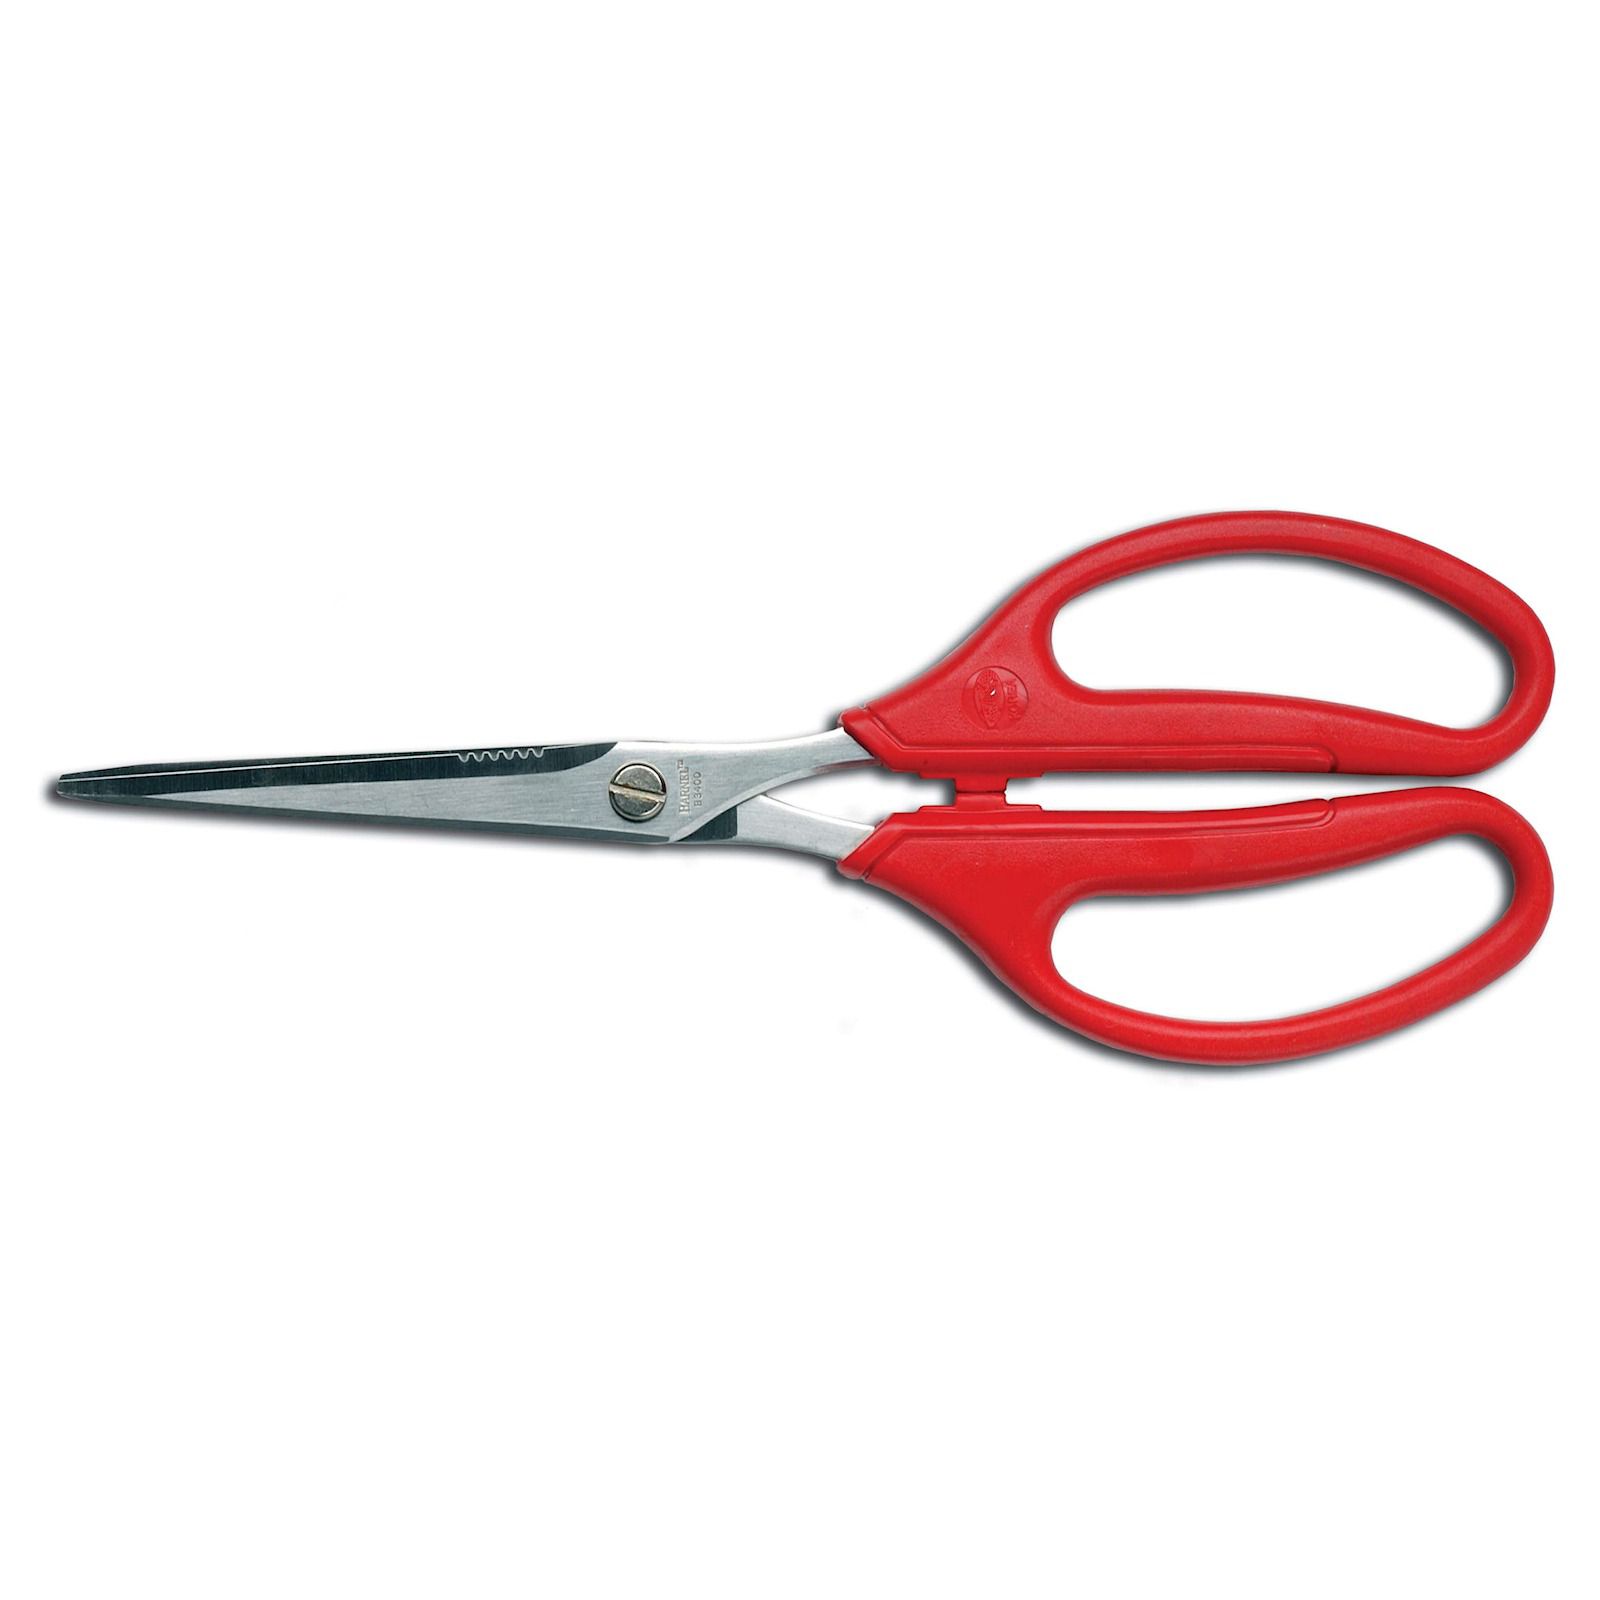 Barnel USA B3400 8" All-Purpose Precision Craft Scissors